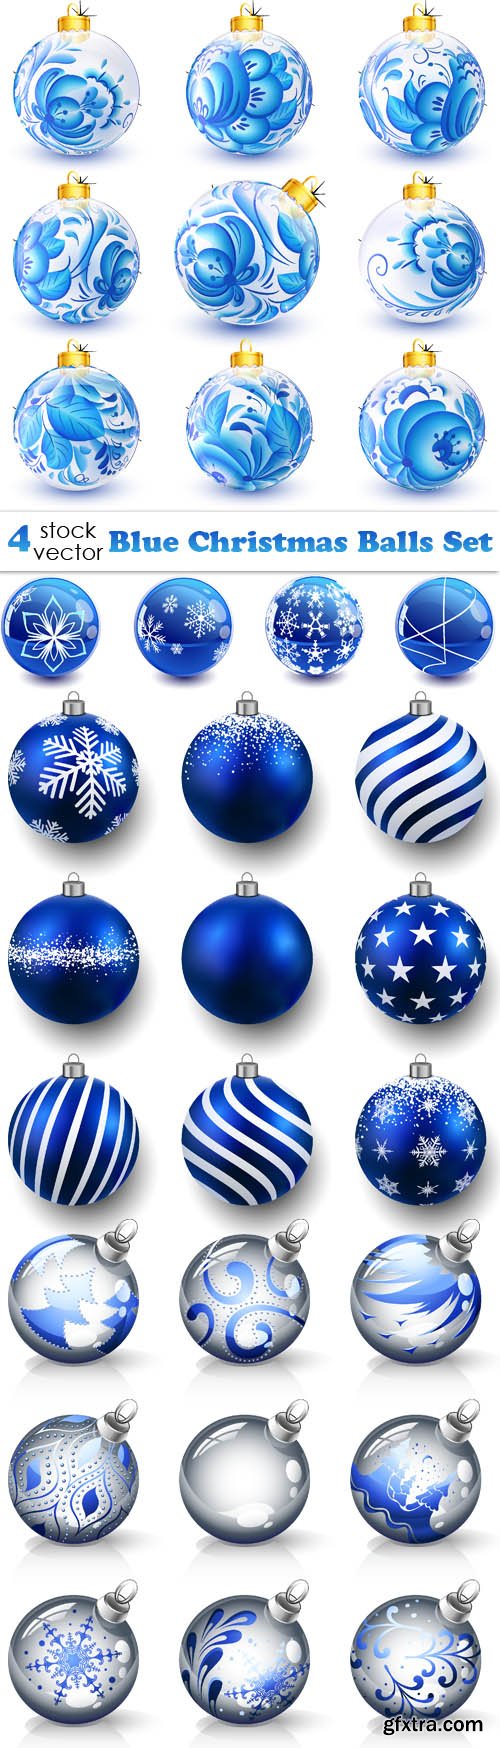 Vectors - Blue Christmas Balls Set